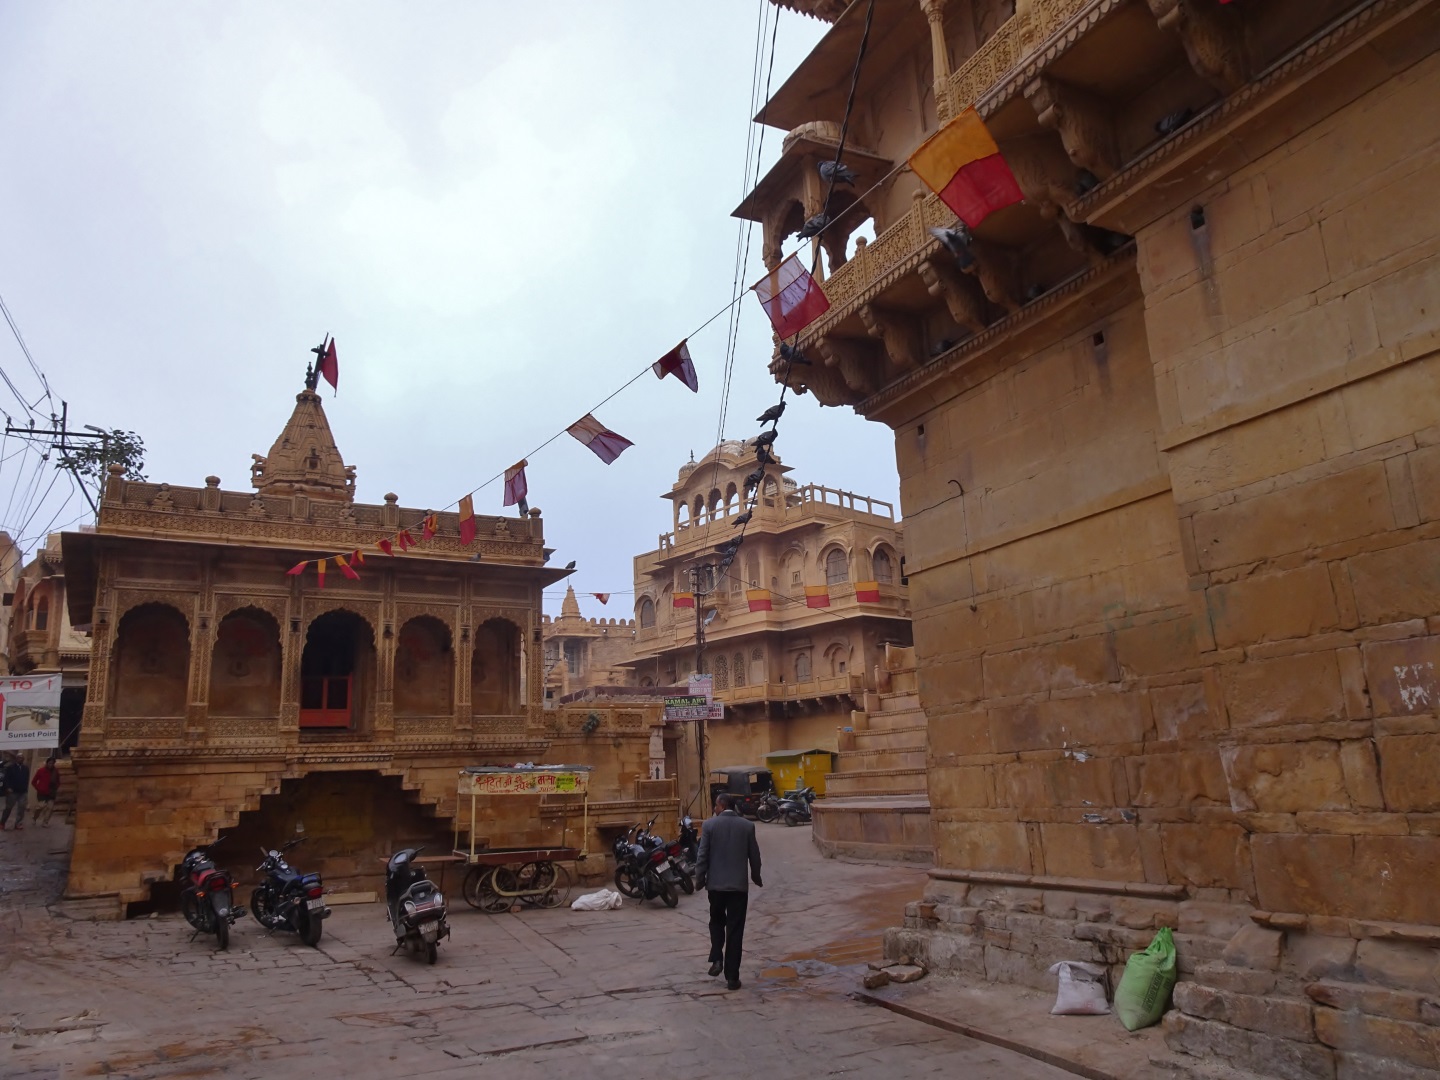 Visiter Jaisalmer - Inde